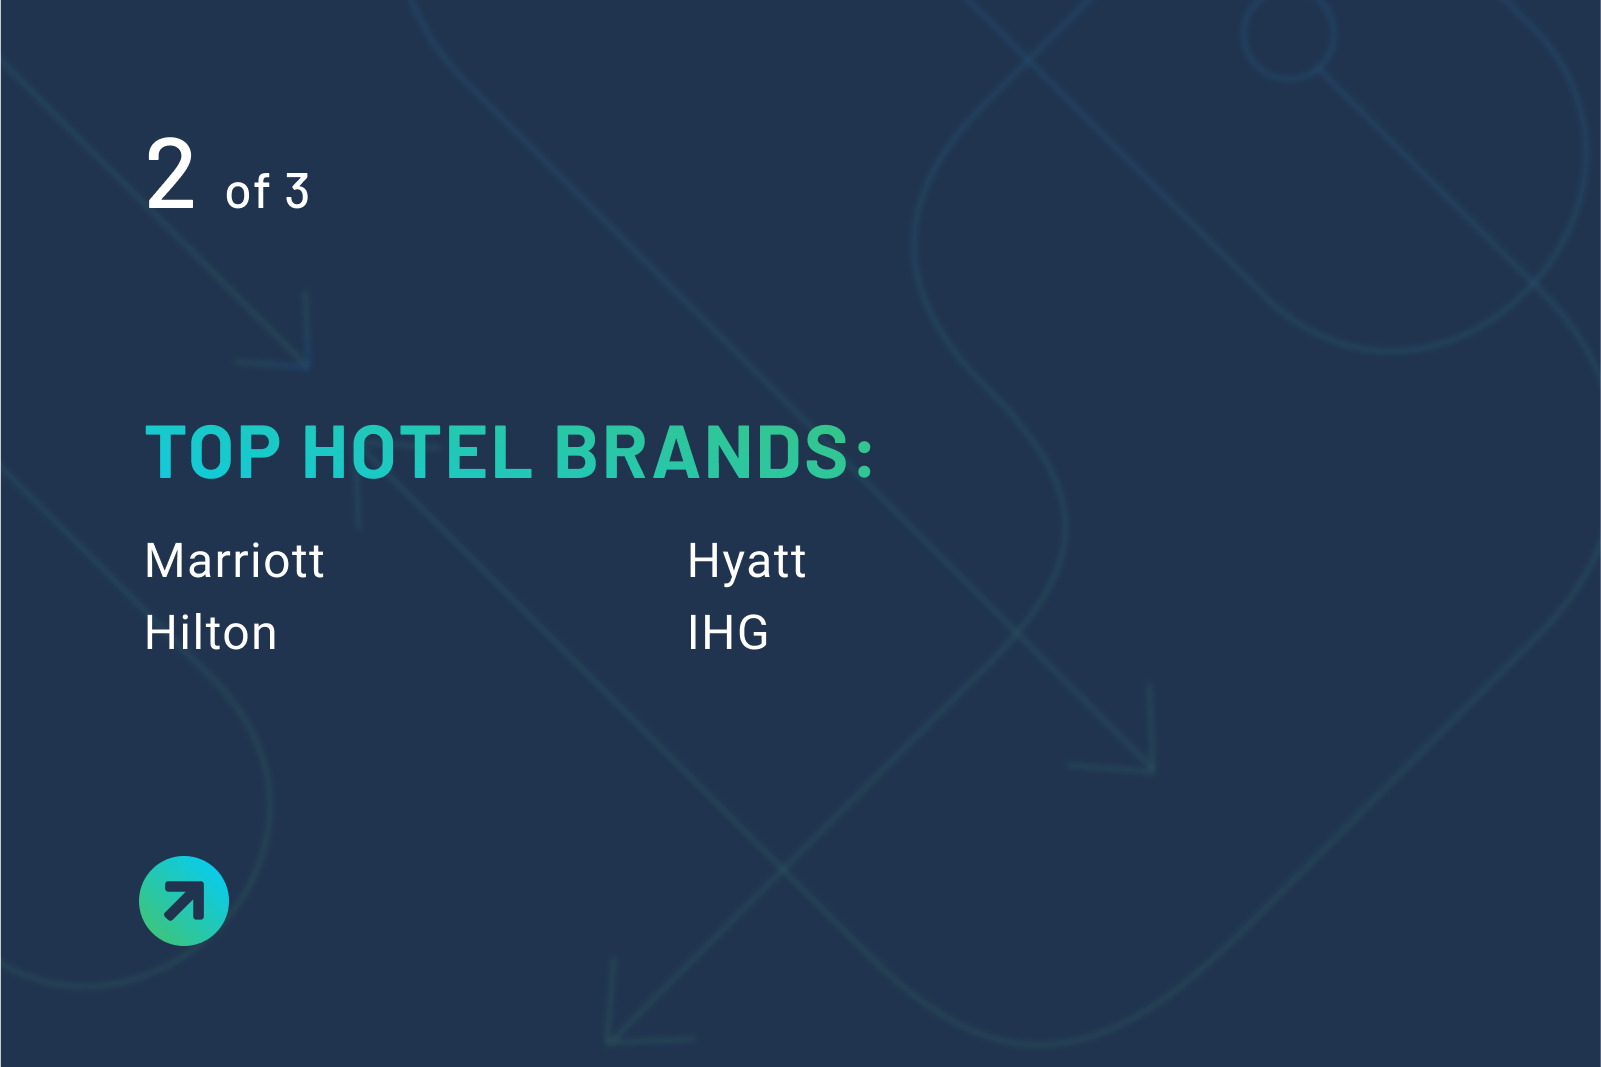 Top hotel brands: Marriott Hilton Hyatt IHG